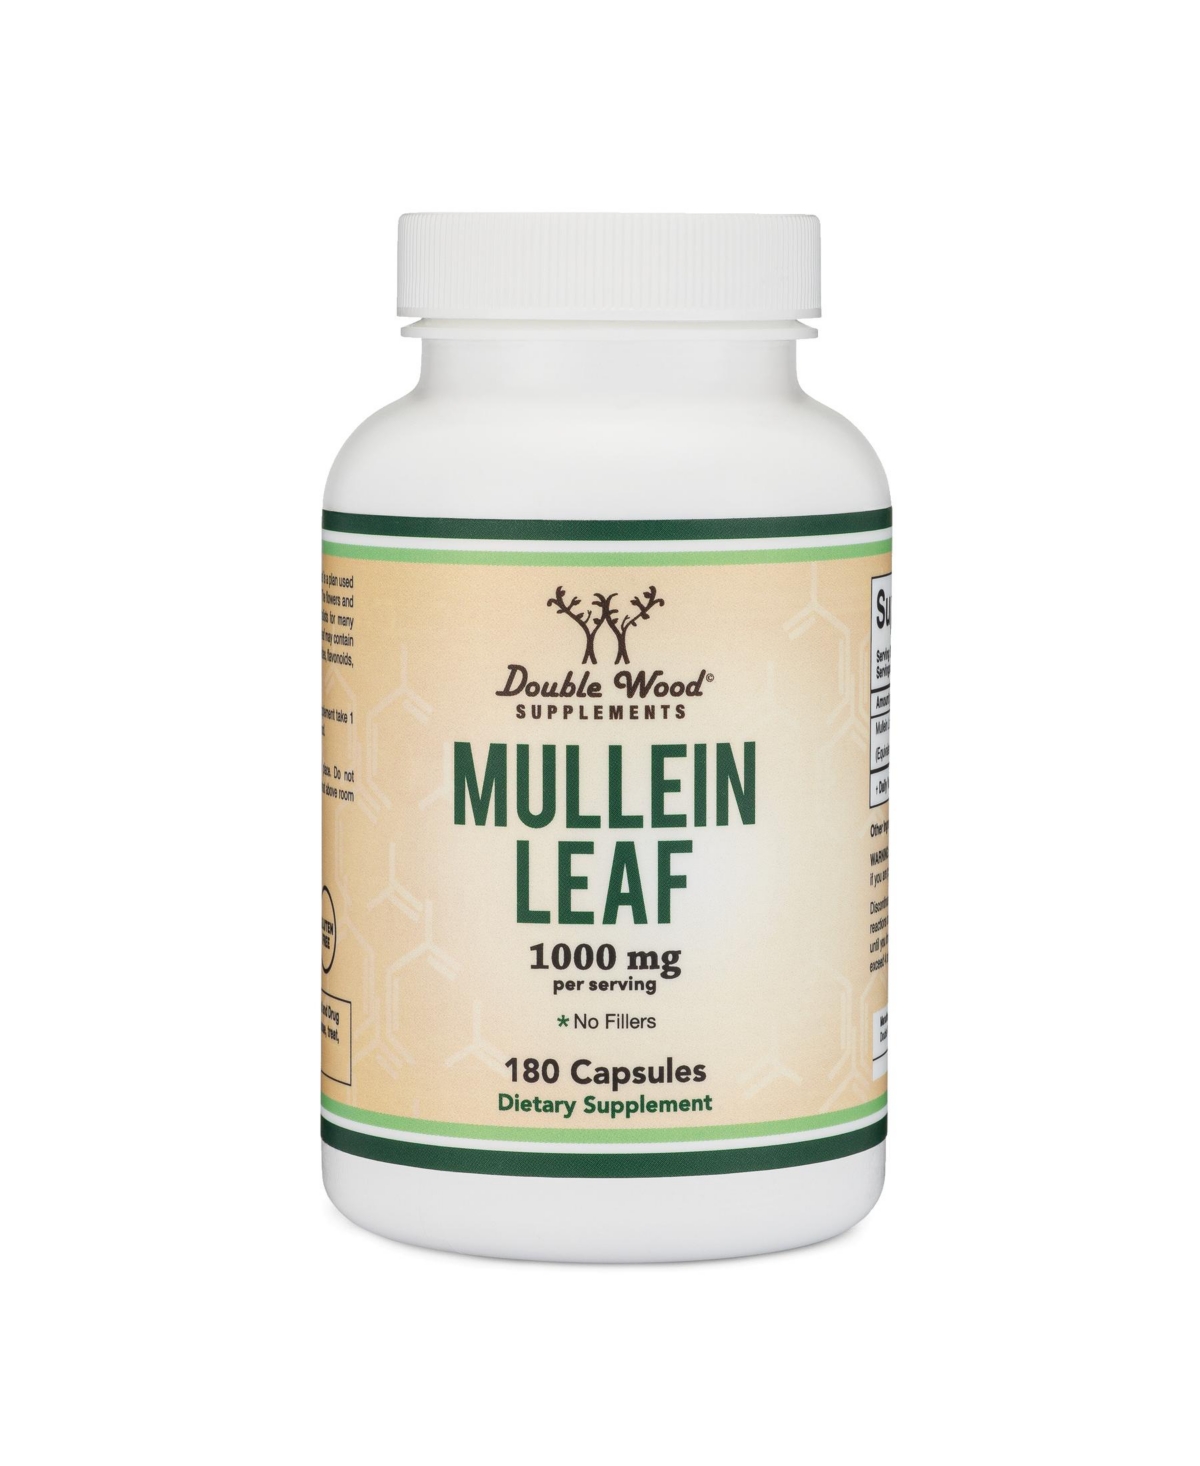 Mullein Leaf - 180 capsules, 1000 mg servings